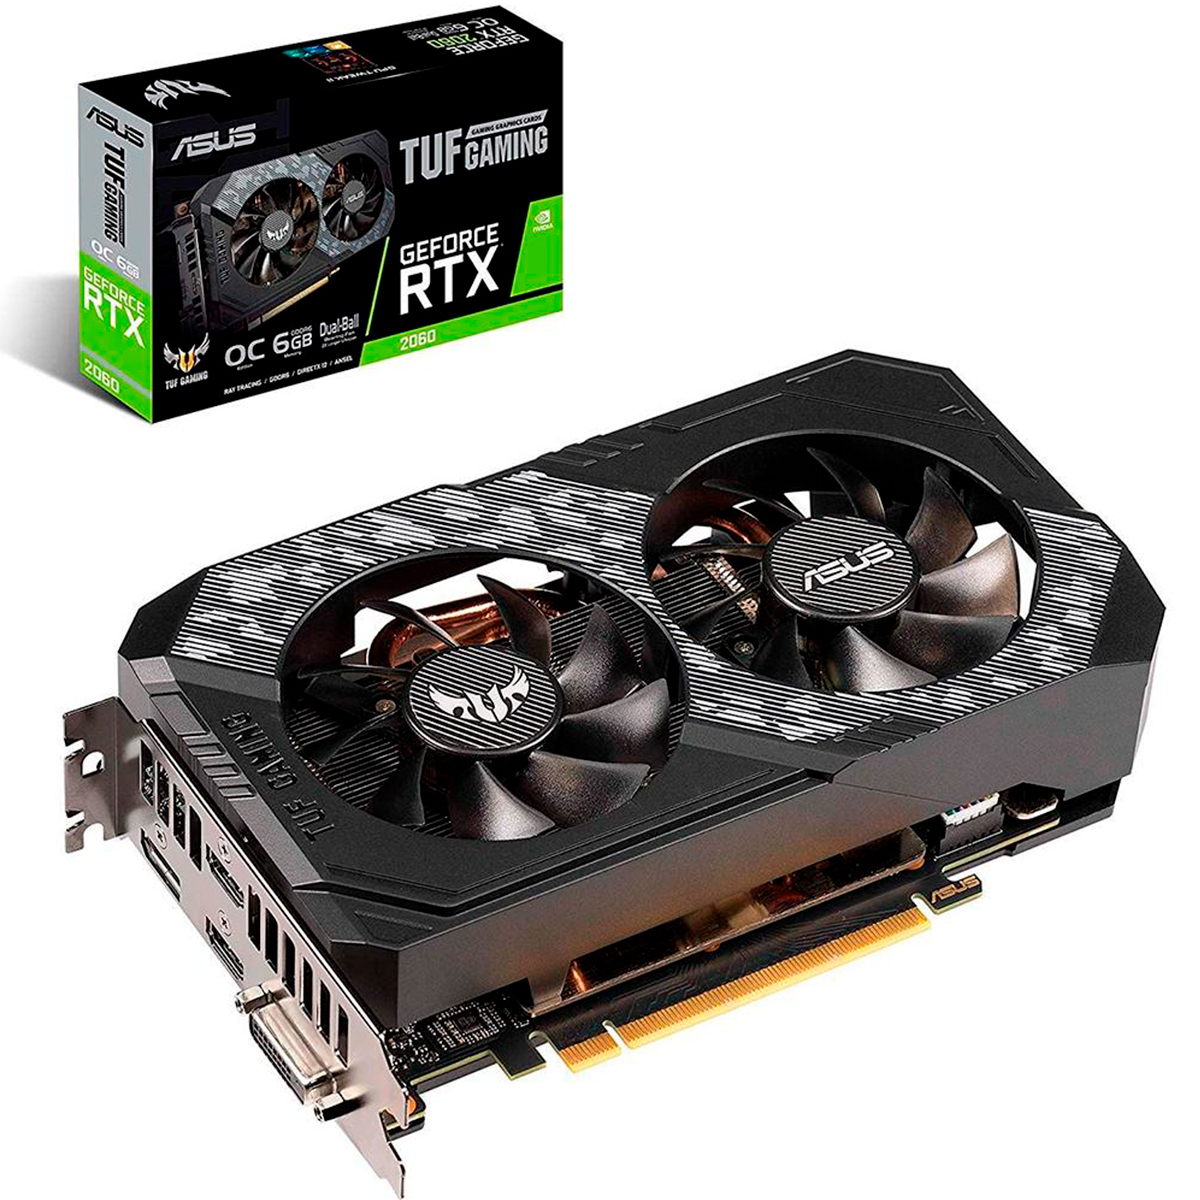 GeForce RTX 2060 6GB GDDR6 192bits - TUF Gaming - OC Edition - Asus TUF-RTX2060-O6G-GAMING